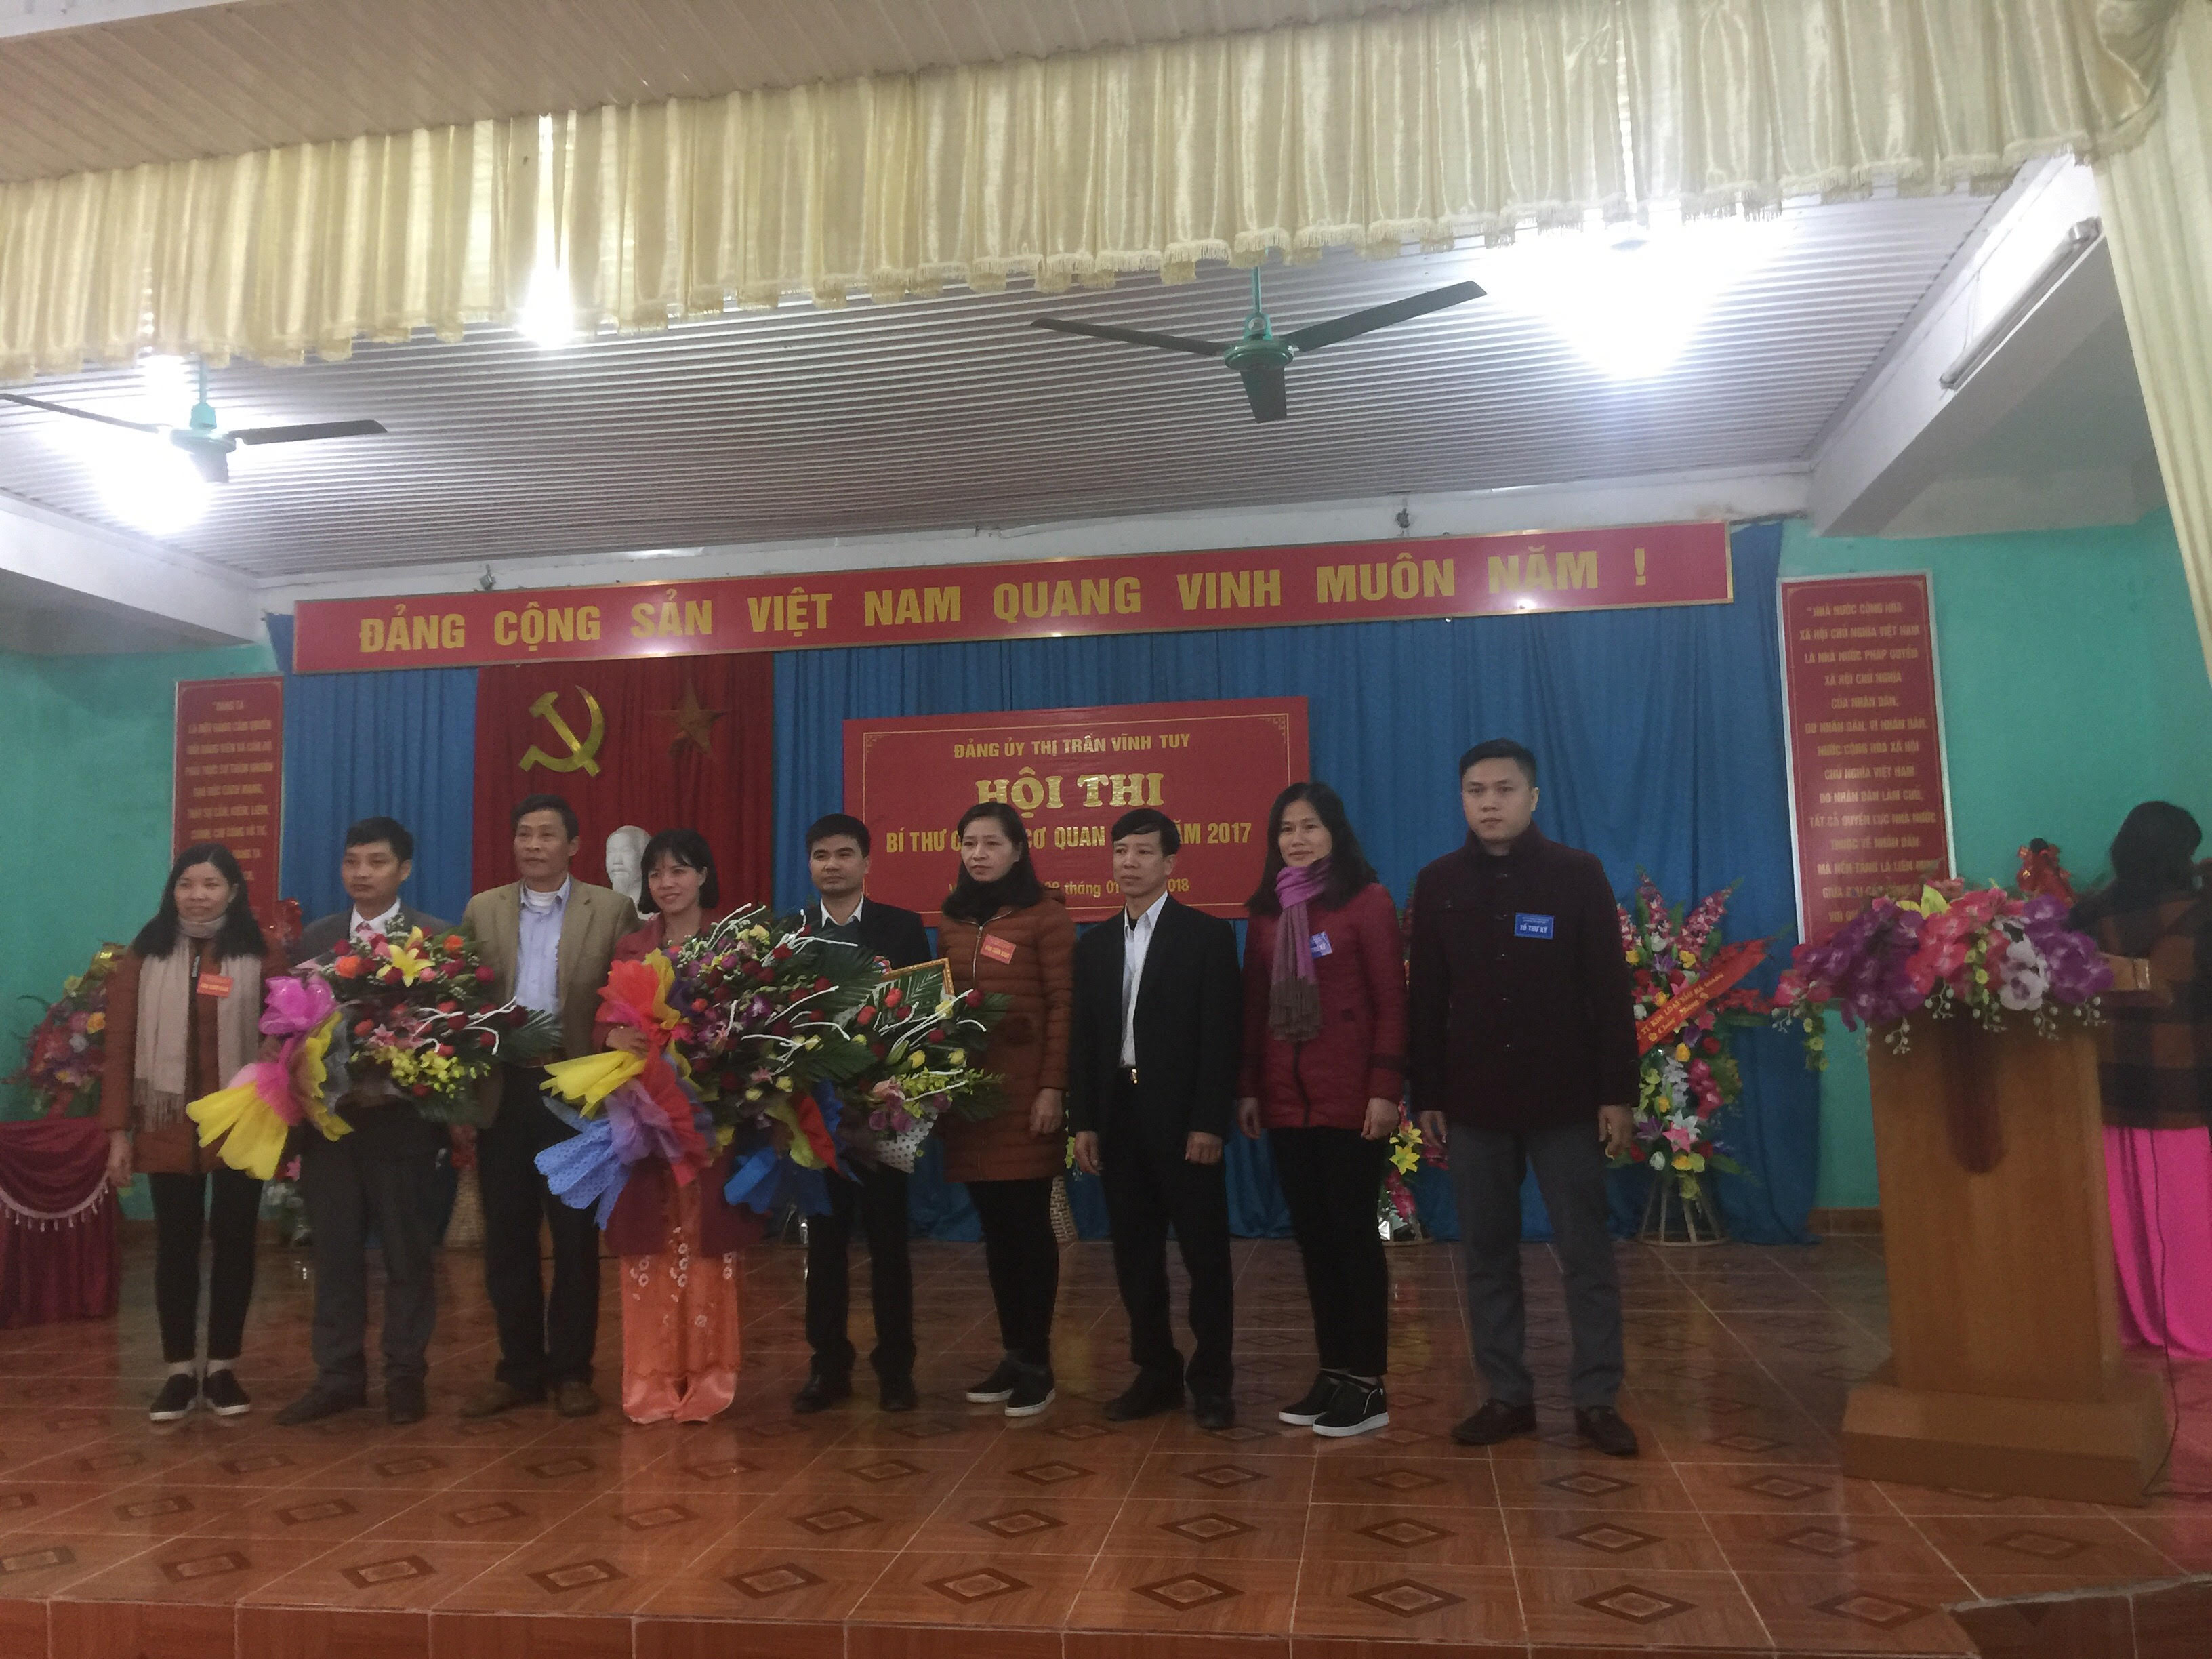 Đảng bộ thị trấn Vĩnh Tuy tổ chức Hội thi Bí thư Chi bộ cơ quan giỏi năm 2017